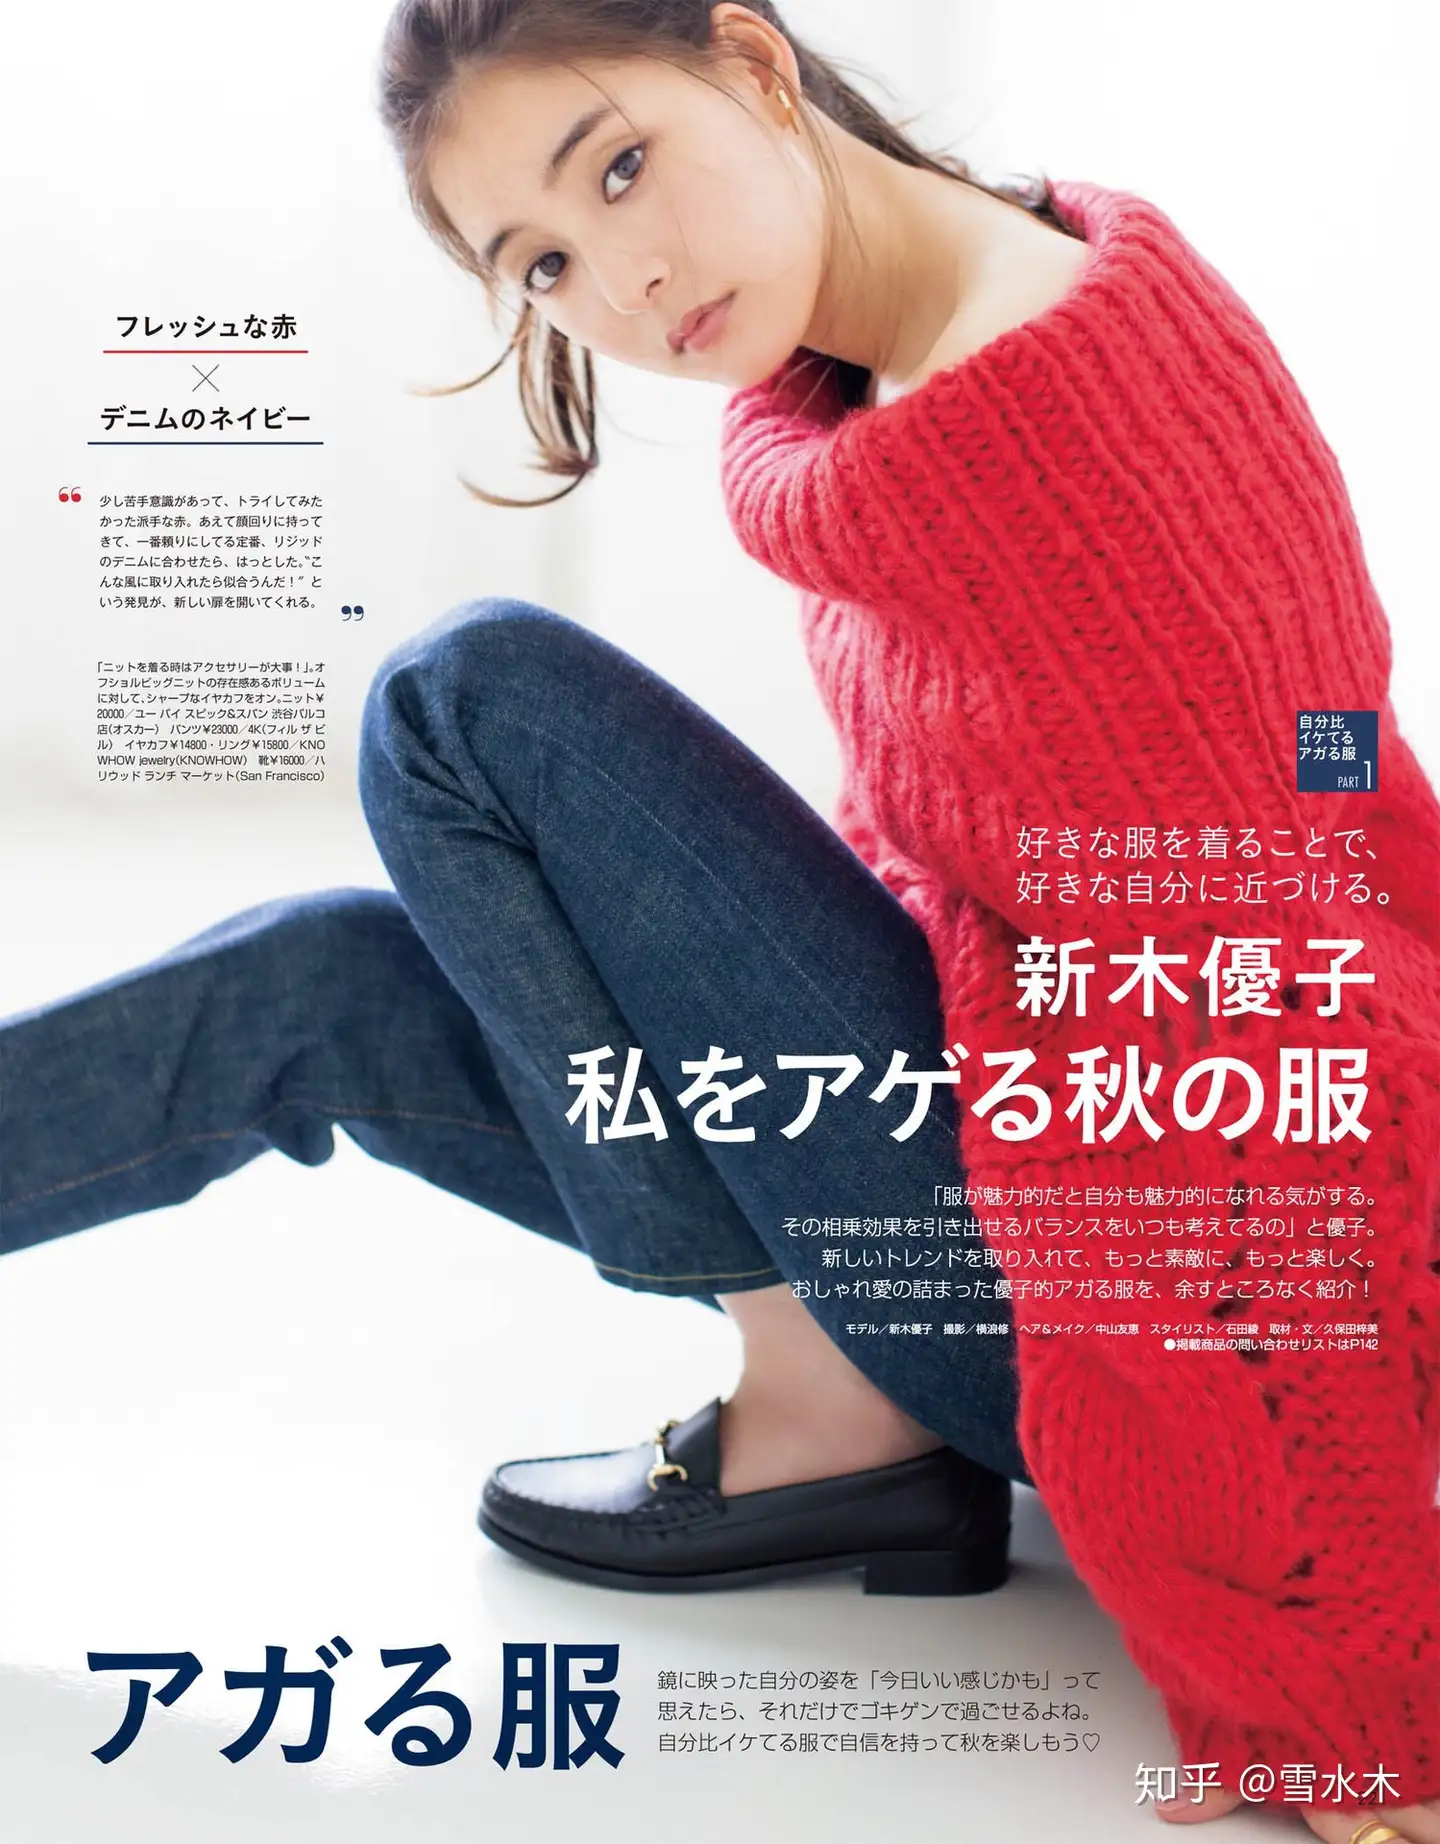 日本TOP模特新木优子教大家如何通过穿搭提高自己魅力指数，不再简单的